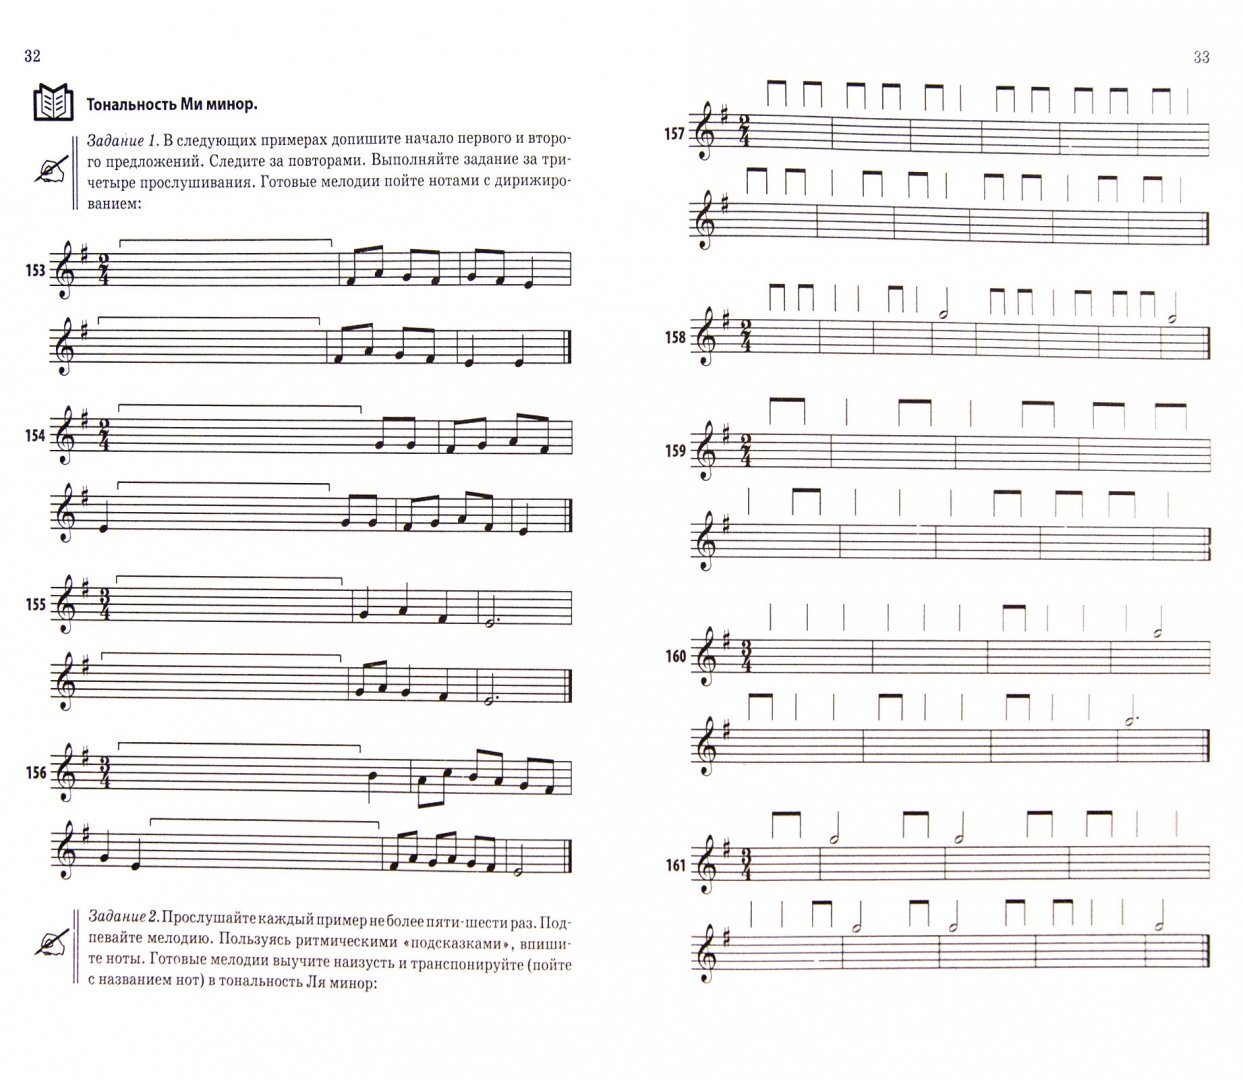 Иллюстрация 1 из 14 для Музыкальные диктанты. Учимся писать легко, быстро и правильно. Подготовительный и 1 классы ДМШ (+CD) - Юлия Фролова | Лабиринт - книги. Источник: Лабиринт